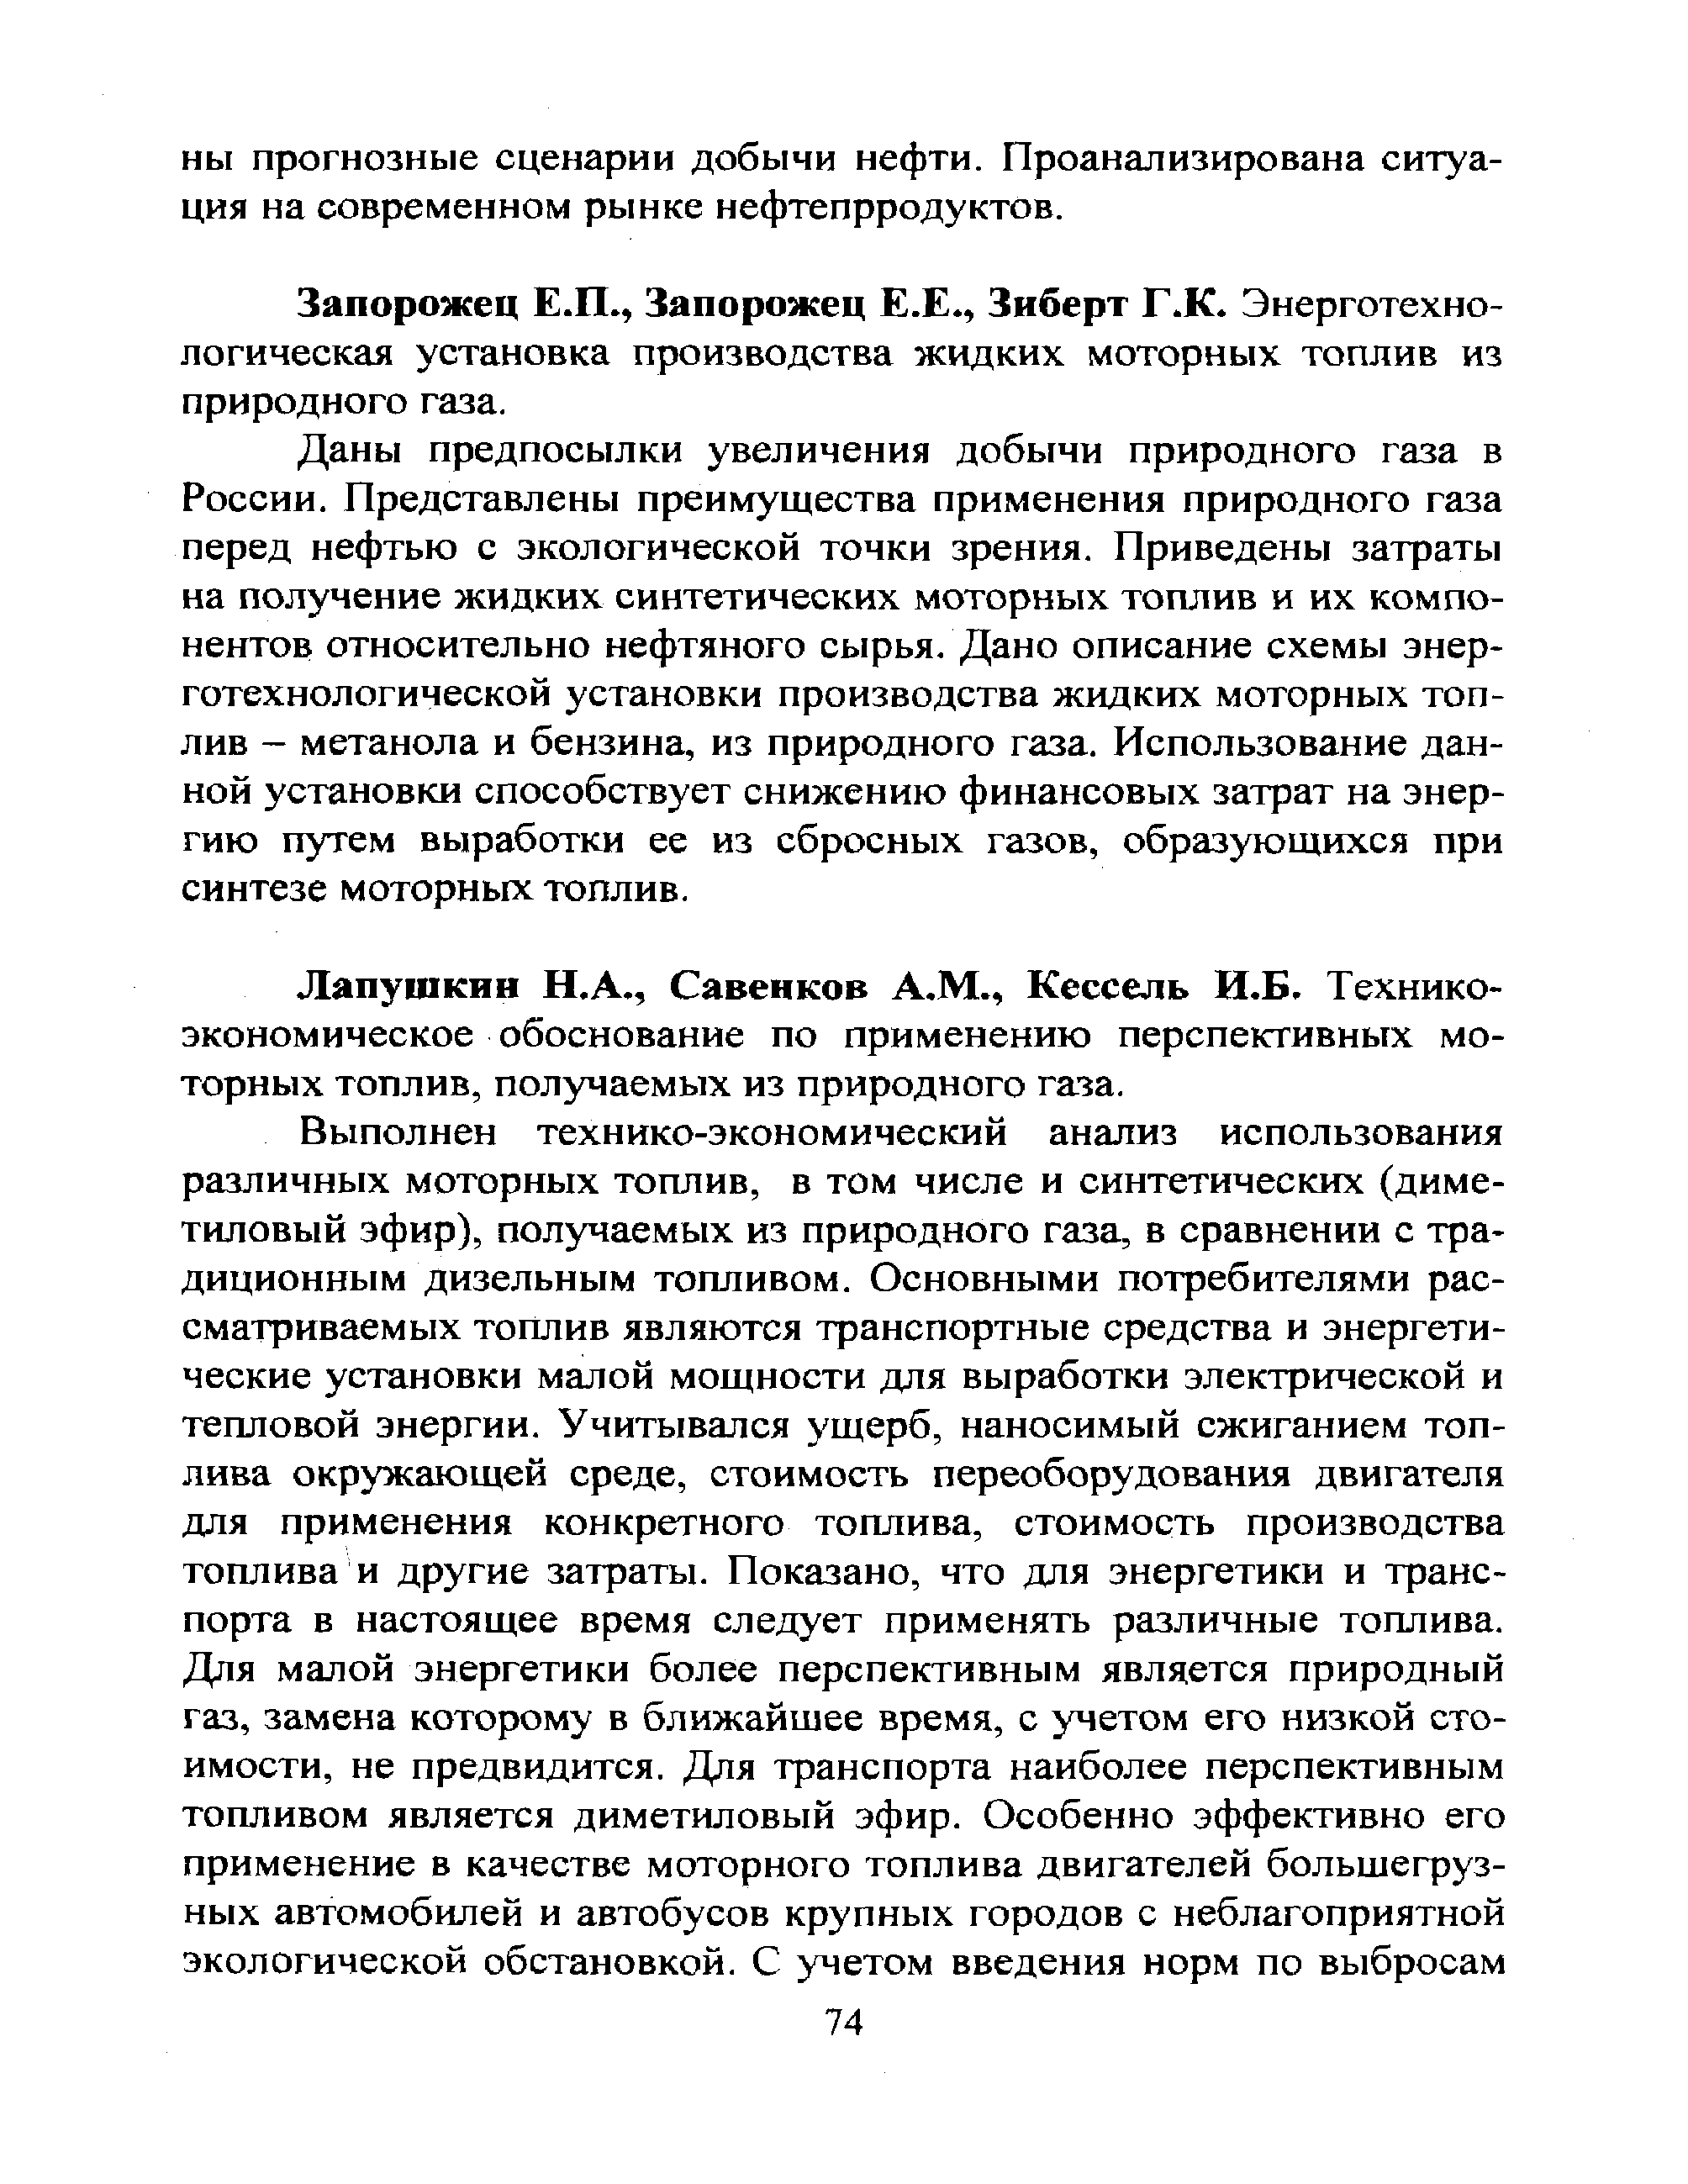 Лапушкин H.A., Савенков А.М., Кессель И.Б. Техникоэкономическое обоснование по применению перспективных моторных топлив, получаемых из природного газа.